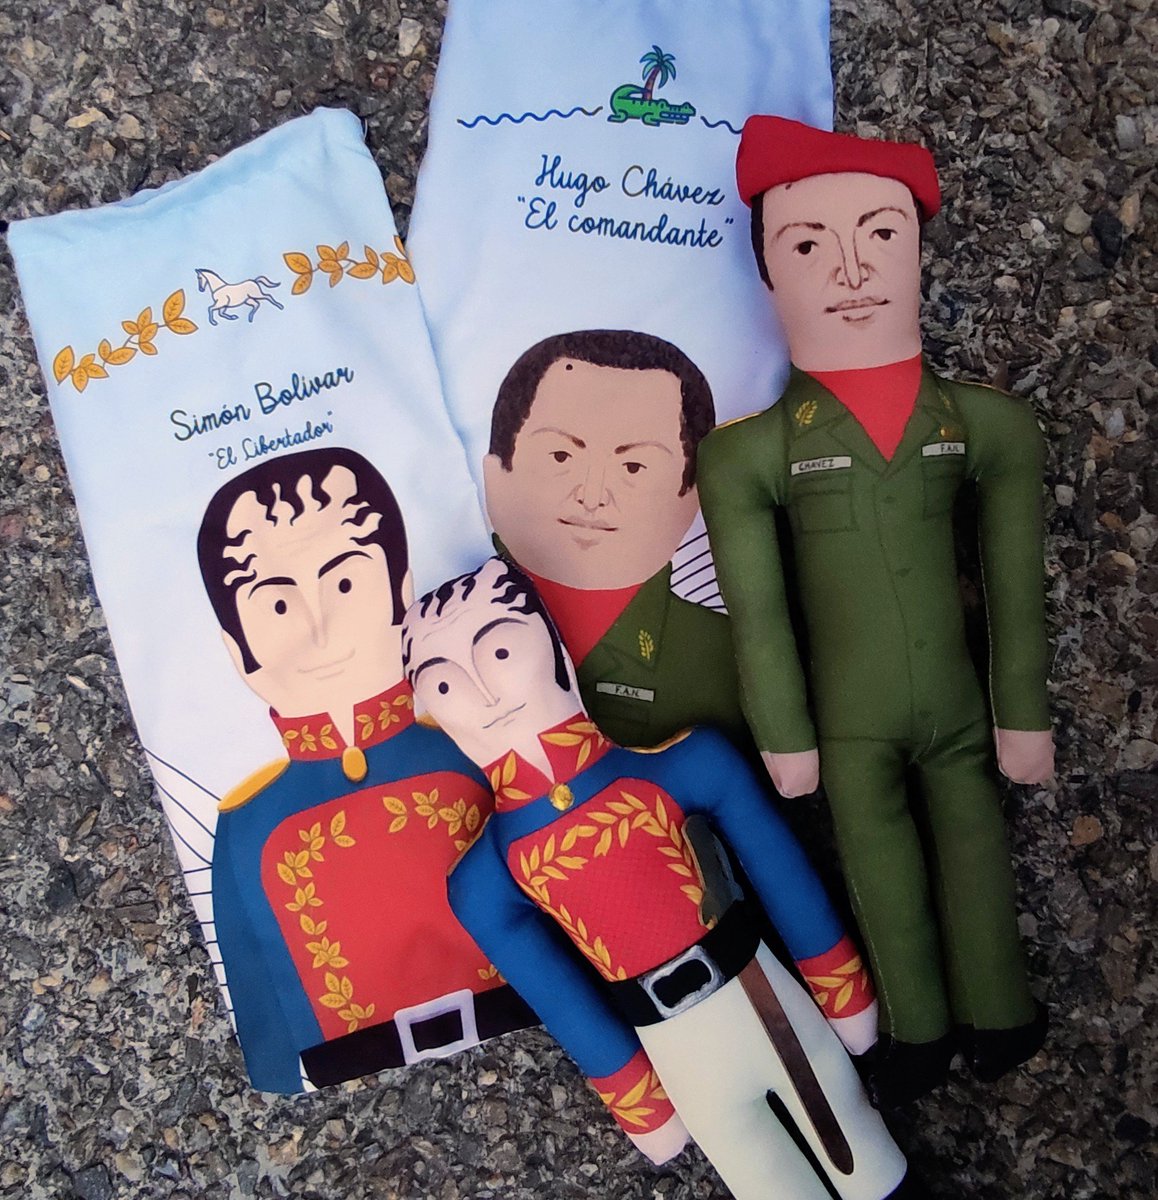 Hace un par de días una turista brasilera radicada en México me contactó para comprarme estos dos muñecos para llevar de regalo. Hoy fui a hacerle su entrega y al recibirlos me dijo: '¡tus muñecos son muy famosos entre la gente de izquierda!'